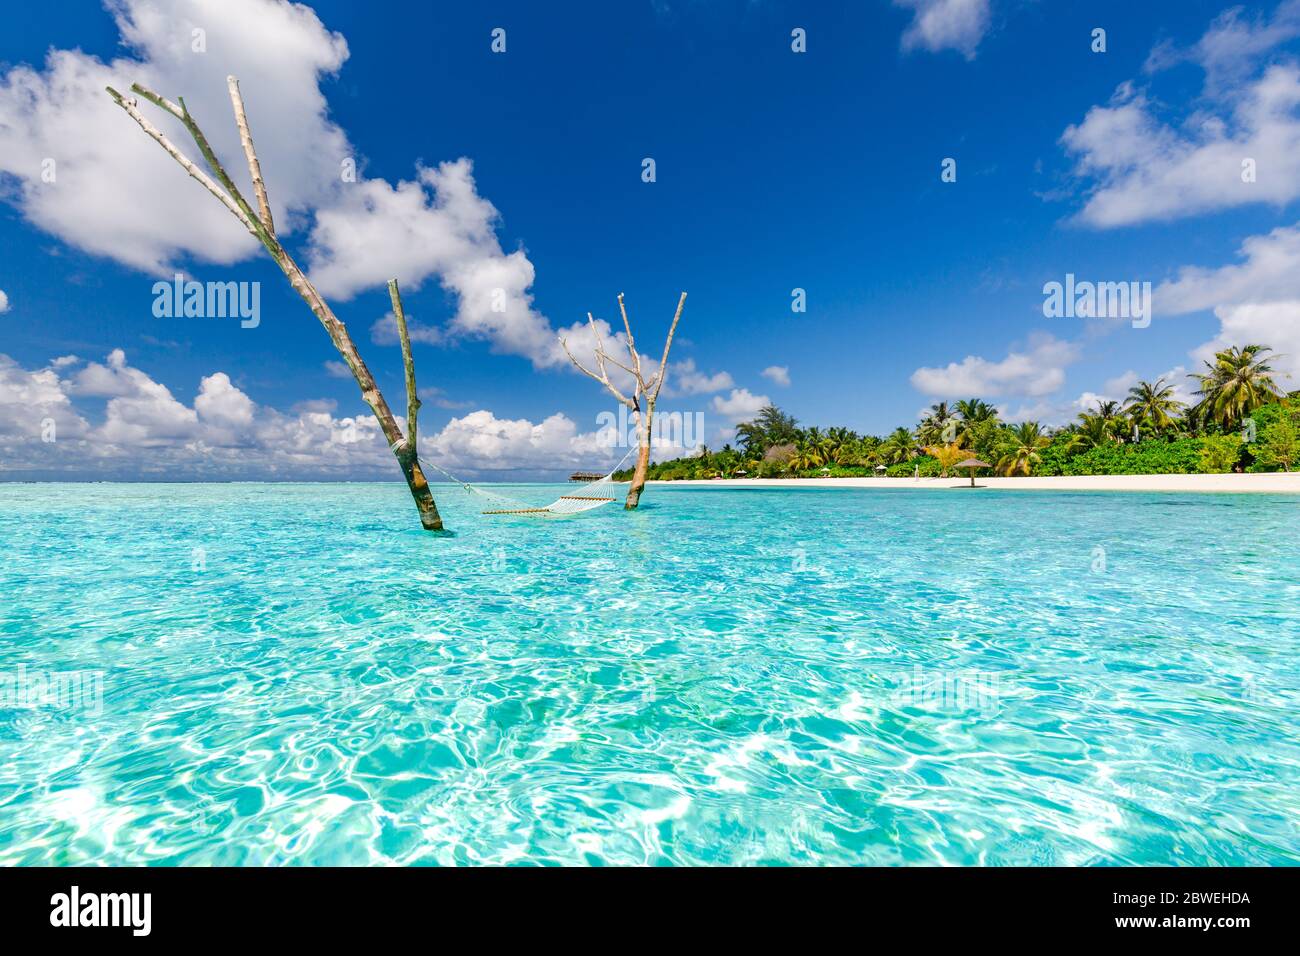 Luxus-Hängematte am Wasser in der paradiesischen Insel Meer Lagune. Sommer Strand Reise und exotischen Urlaubsziel. Inspirierende tropische Strandreise Landschaft Stockfoto